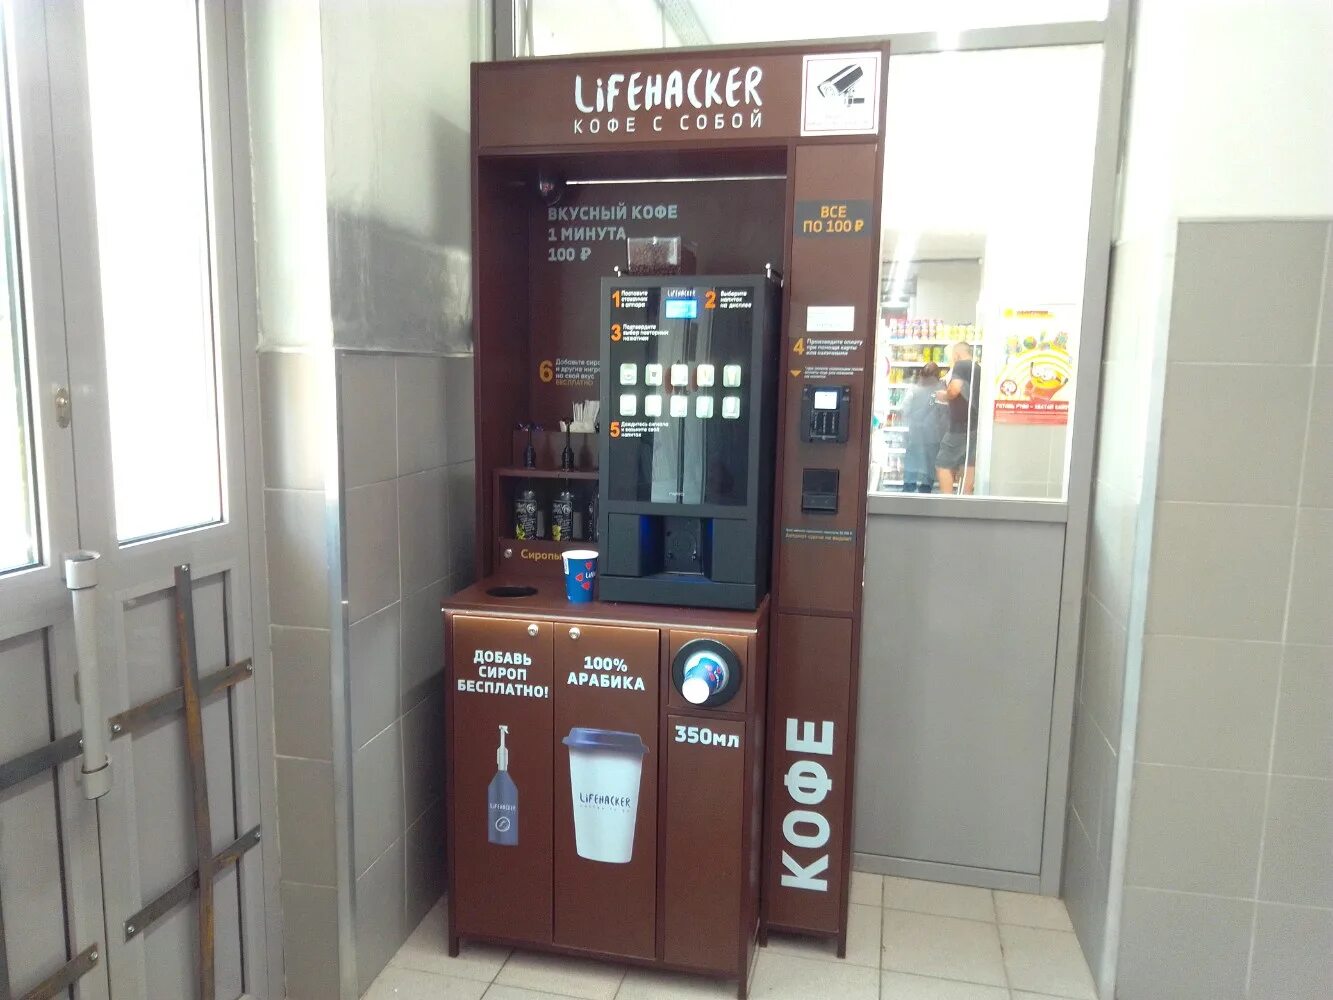 Кофе аппарат. Кофейный автомат. Лайфхакер кофе аппарат. Кофейный аппарат Lifehacker. Место кофейный автомат